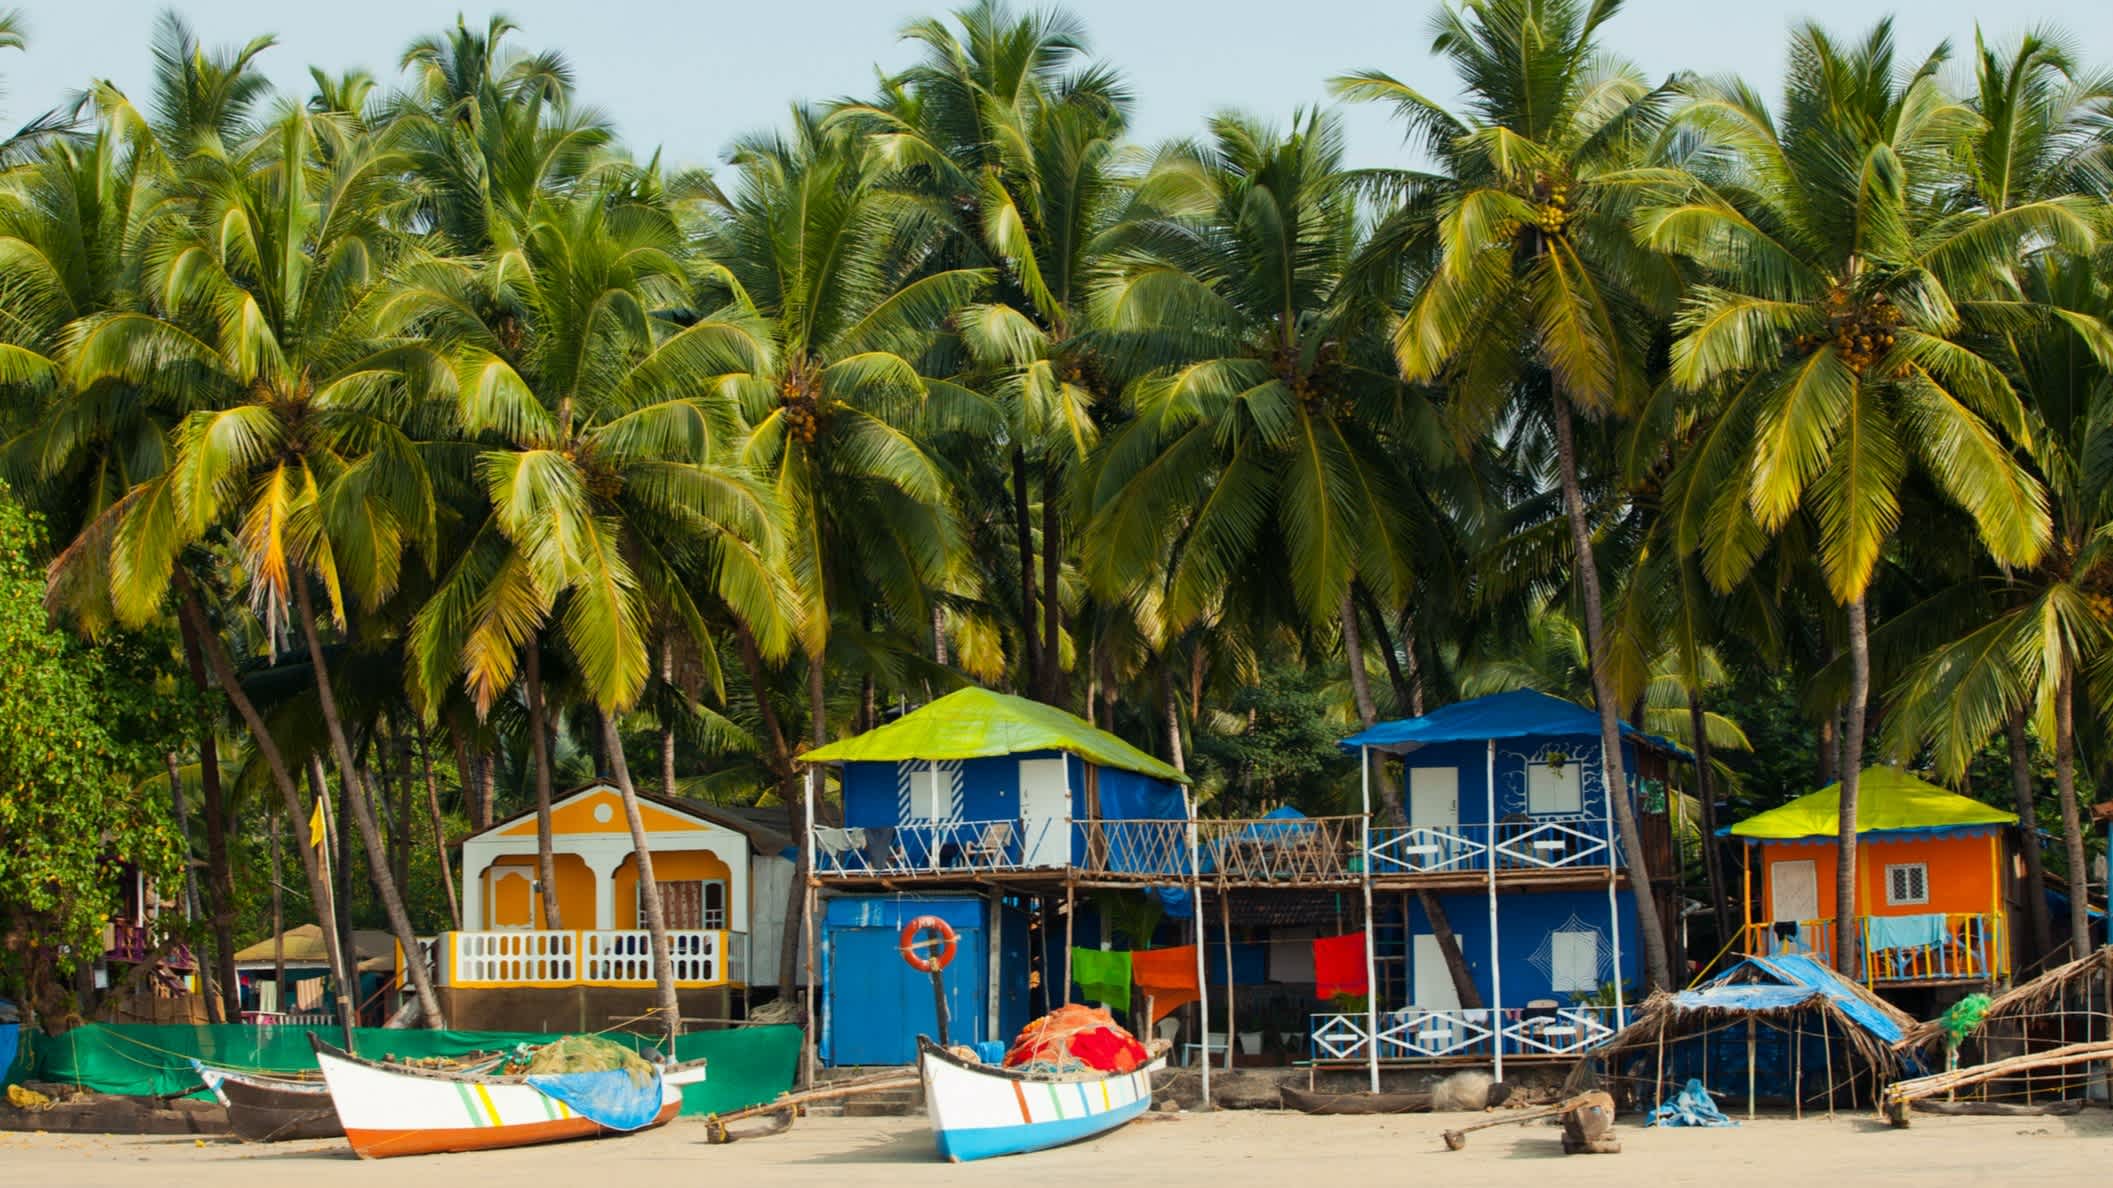 Bateaux de pêche sur la plage de Palolem Goa, Inde